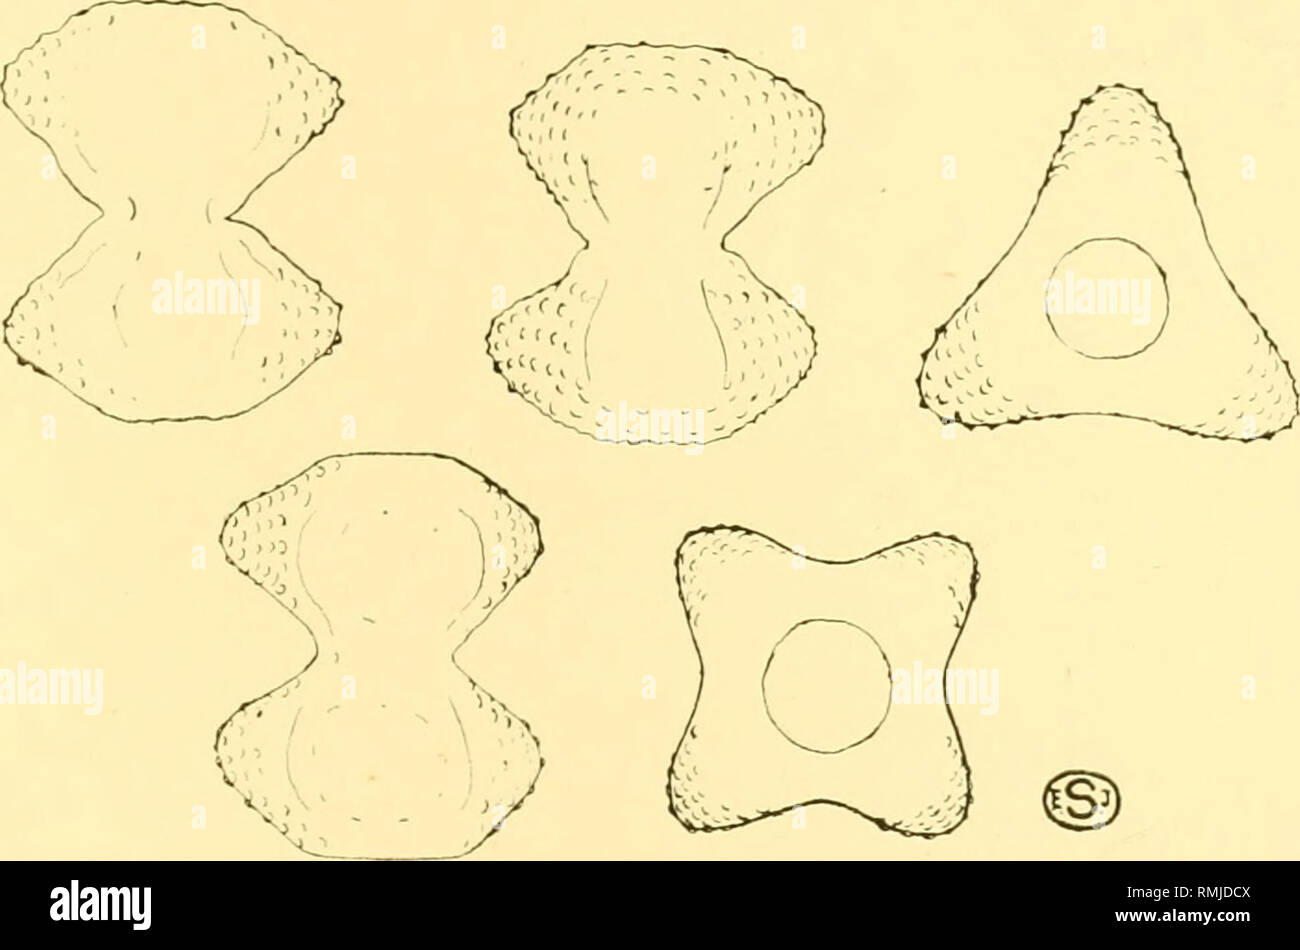 . Annals of the South African Museum. Annale van die Suid-Afrikaanse Museum. Natural history. The Freshwater Algae of Africa. 561 Long., 3^/x; lat., 26/a; lat. isthm., 12/x. All individuals triangular in end-view. 3. Staurastrum hexagonale, n. sp. ( Fig. 32.) S. subparvum, cireiter I}, plo longius quam latum, modice con- strictum, sinu acutangulo Late aperto. Semicellulae transverse hexa- gonae, angulis lateralibus leviter productis, angulis omnibus plus minus rotundatis; apicibus rectis truncatis; marginibus lateralibus superioribus fere rectis, marginibus lateralibus inferioribus reotis vel  Stock Photo